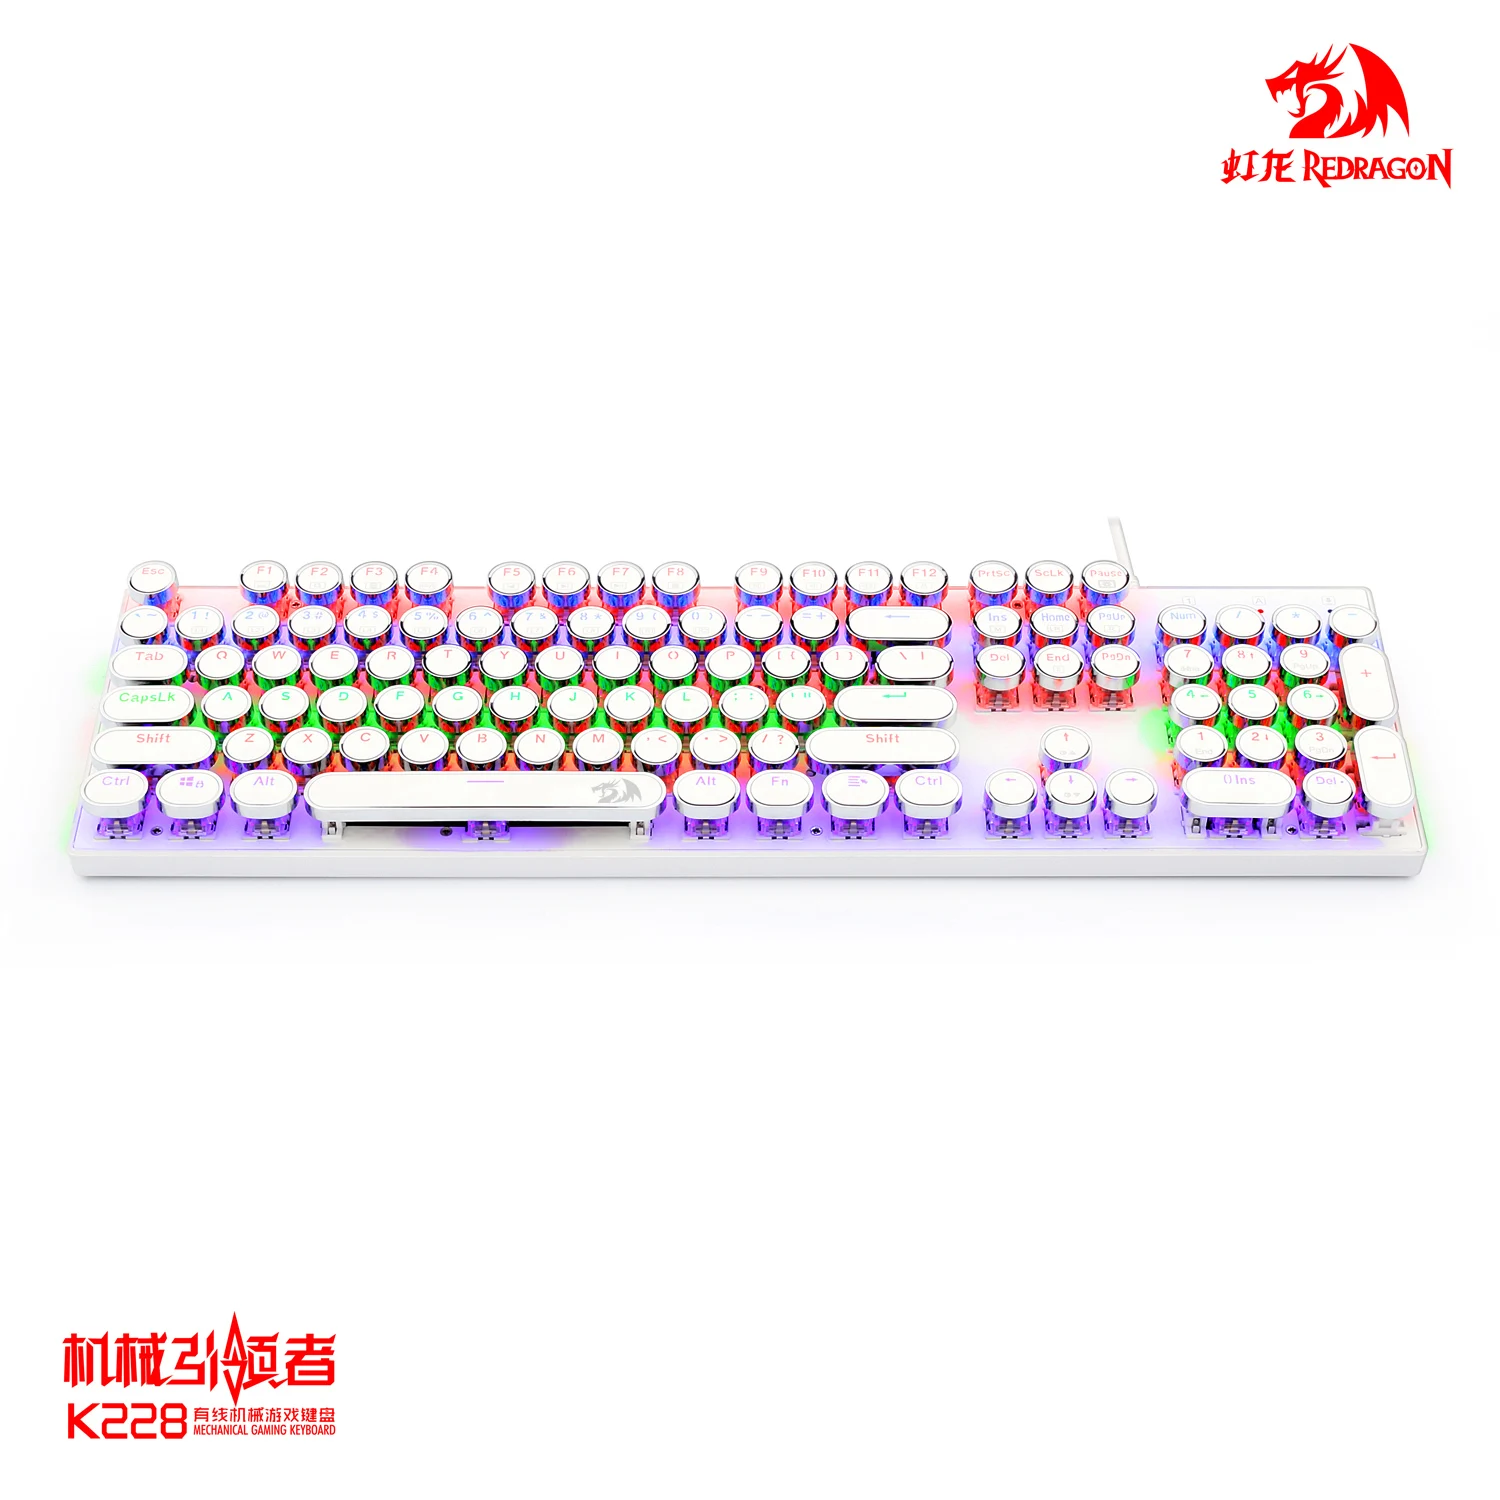 Redragon клавиатура пишущей машинки механические переключатели со светодиодной подсветкой Ретро стиль 104 клавиш механическая клавиатура K228